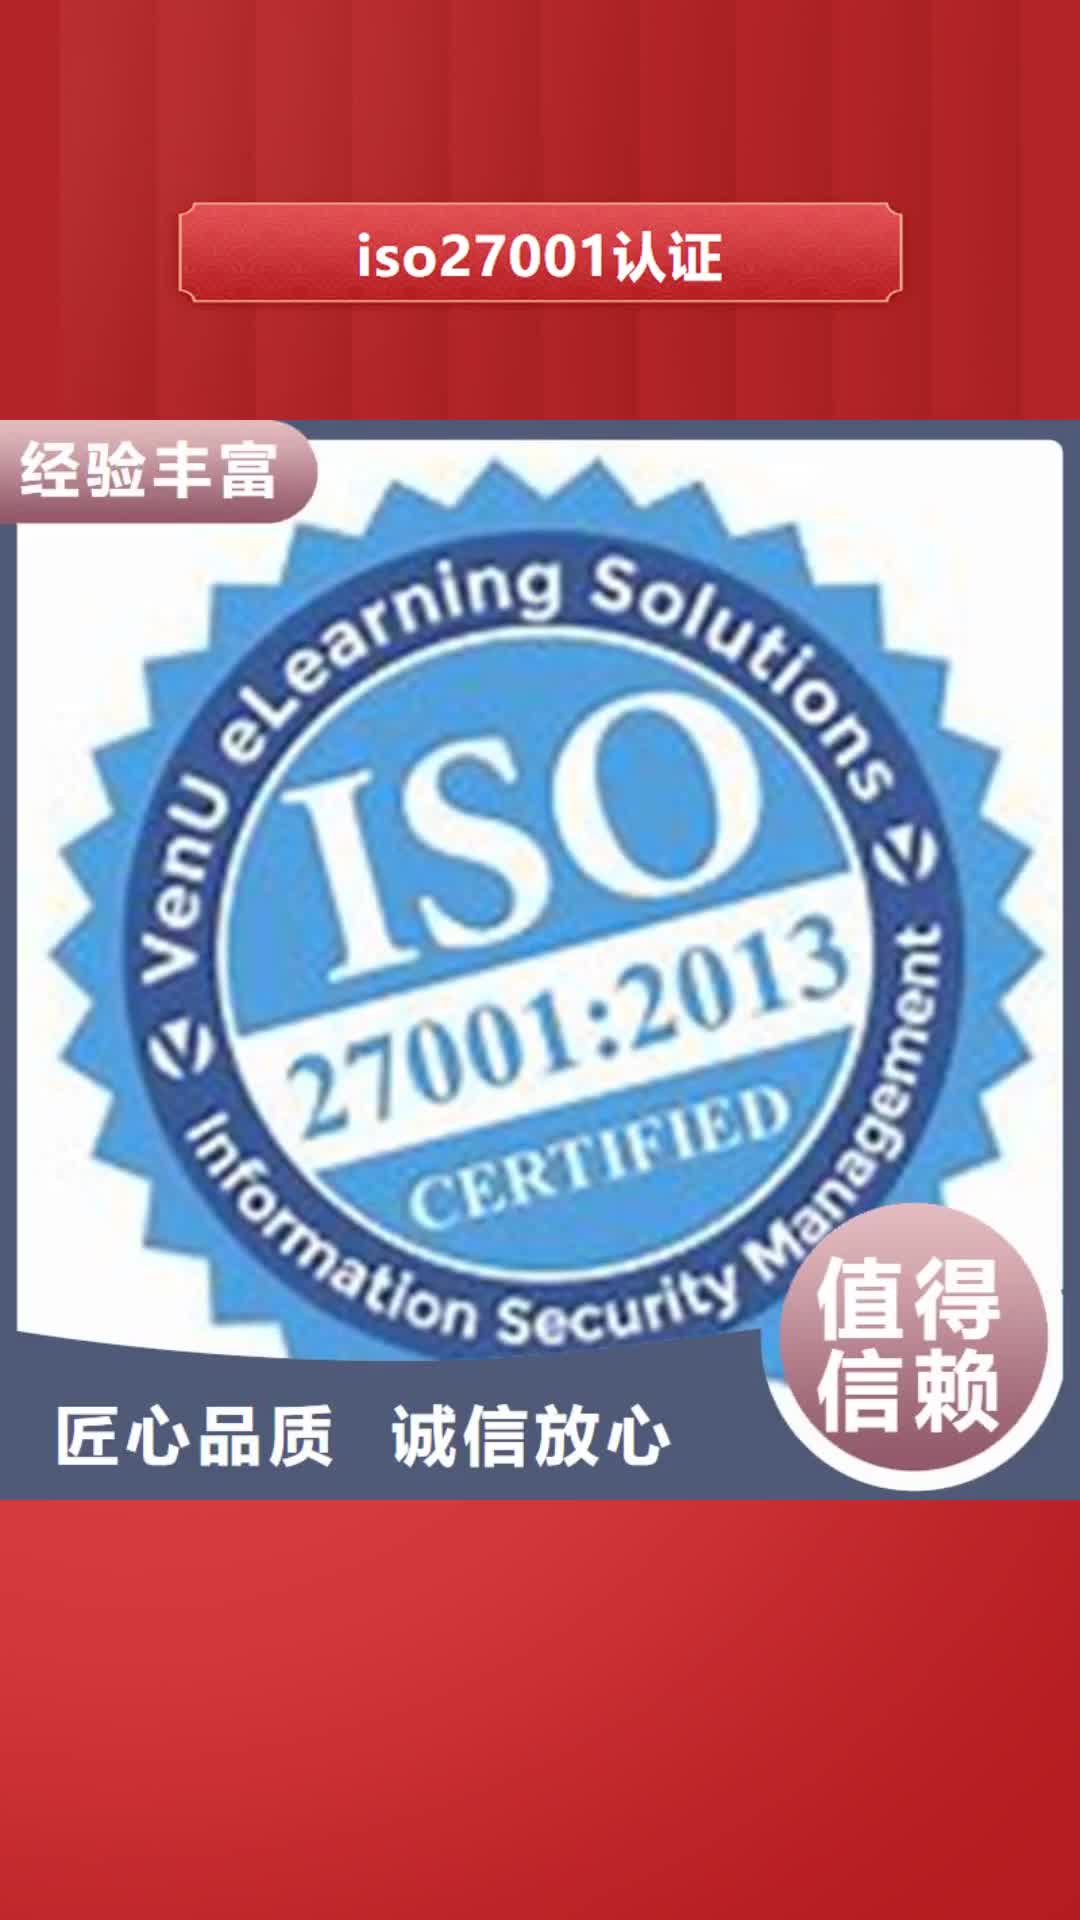 【三明 iso27001认证 ISO13485认证品质卓越】